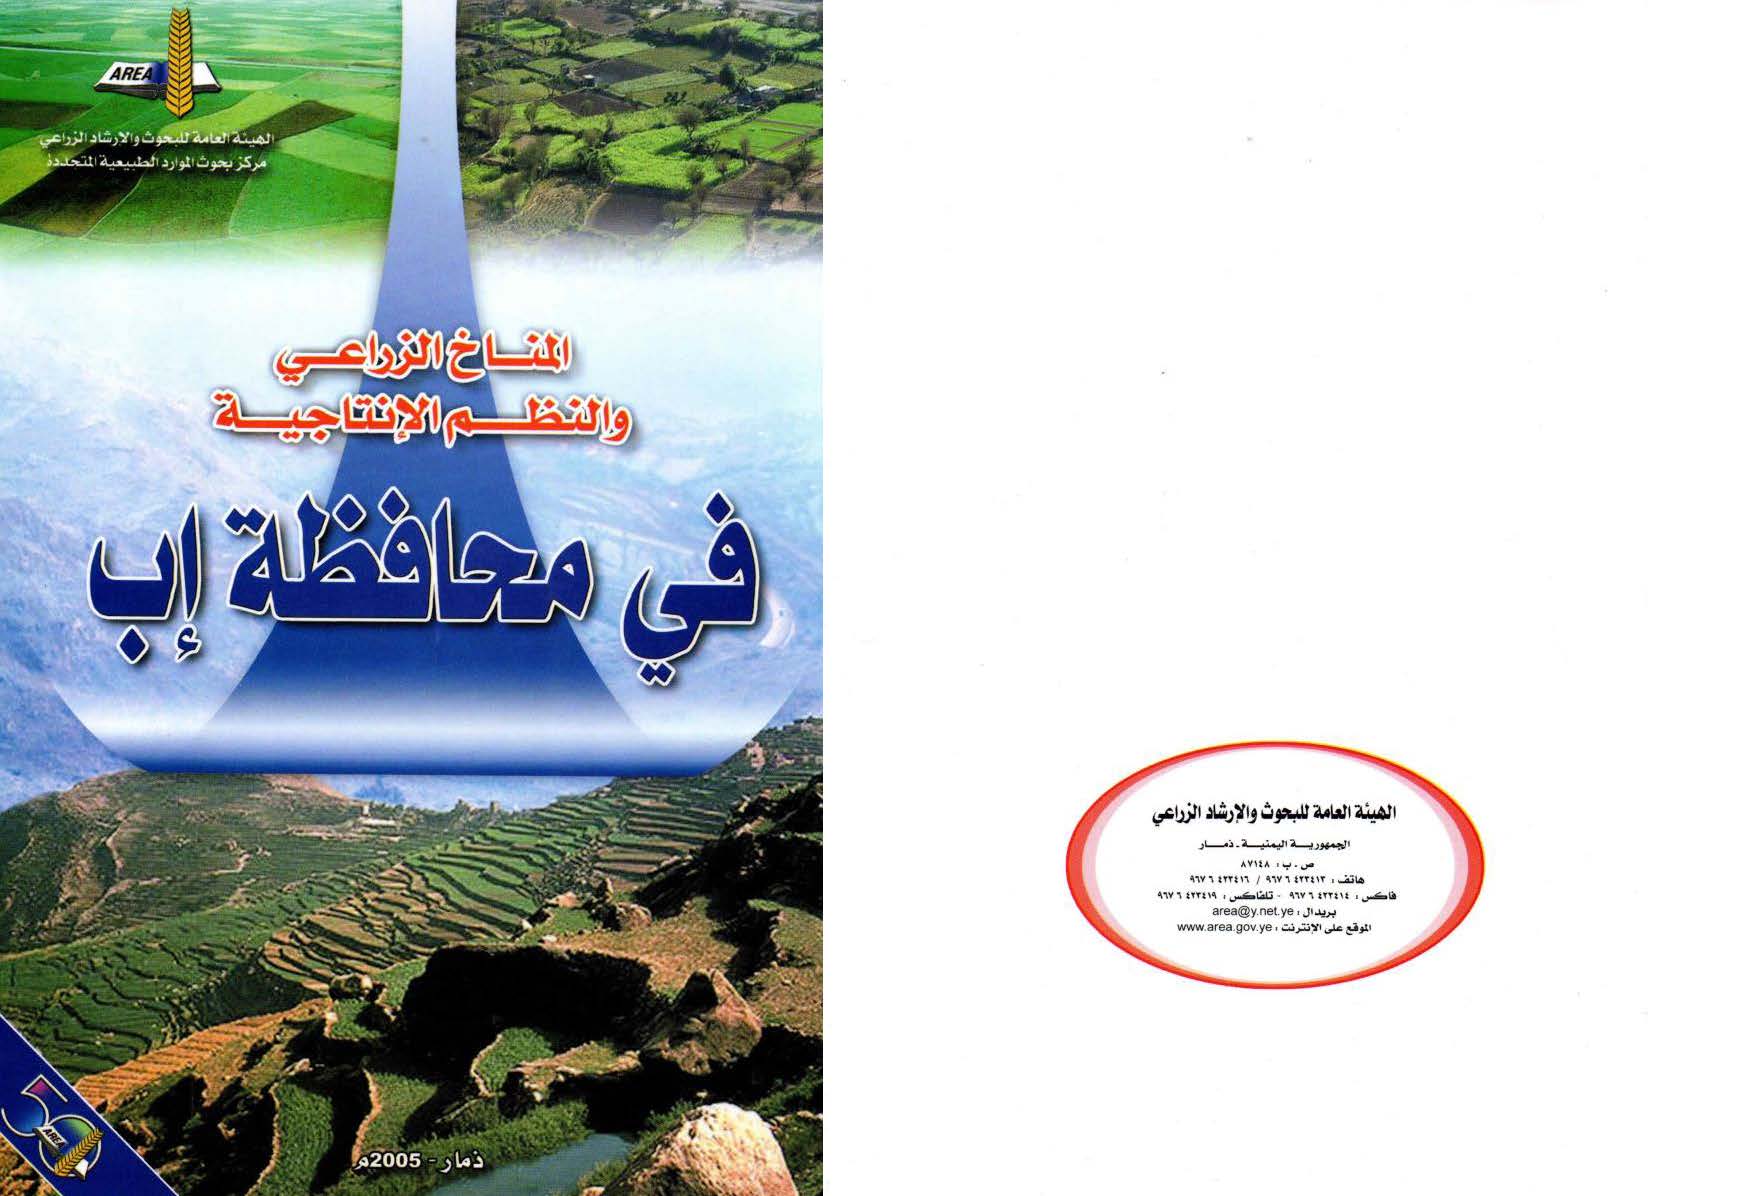 المناخ الزراعي والنظم الانتاجية في محافظة اب 2005م